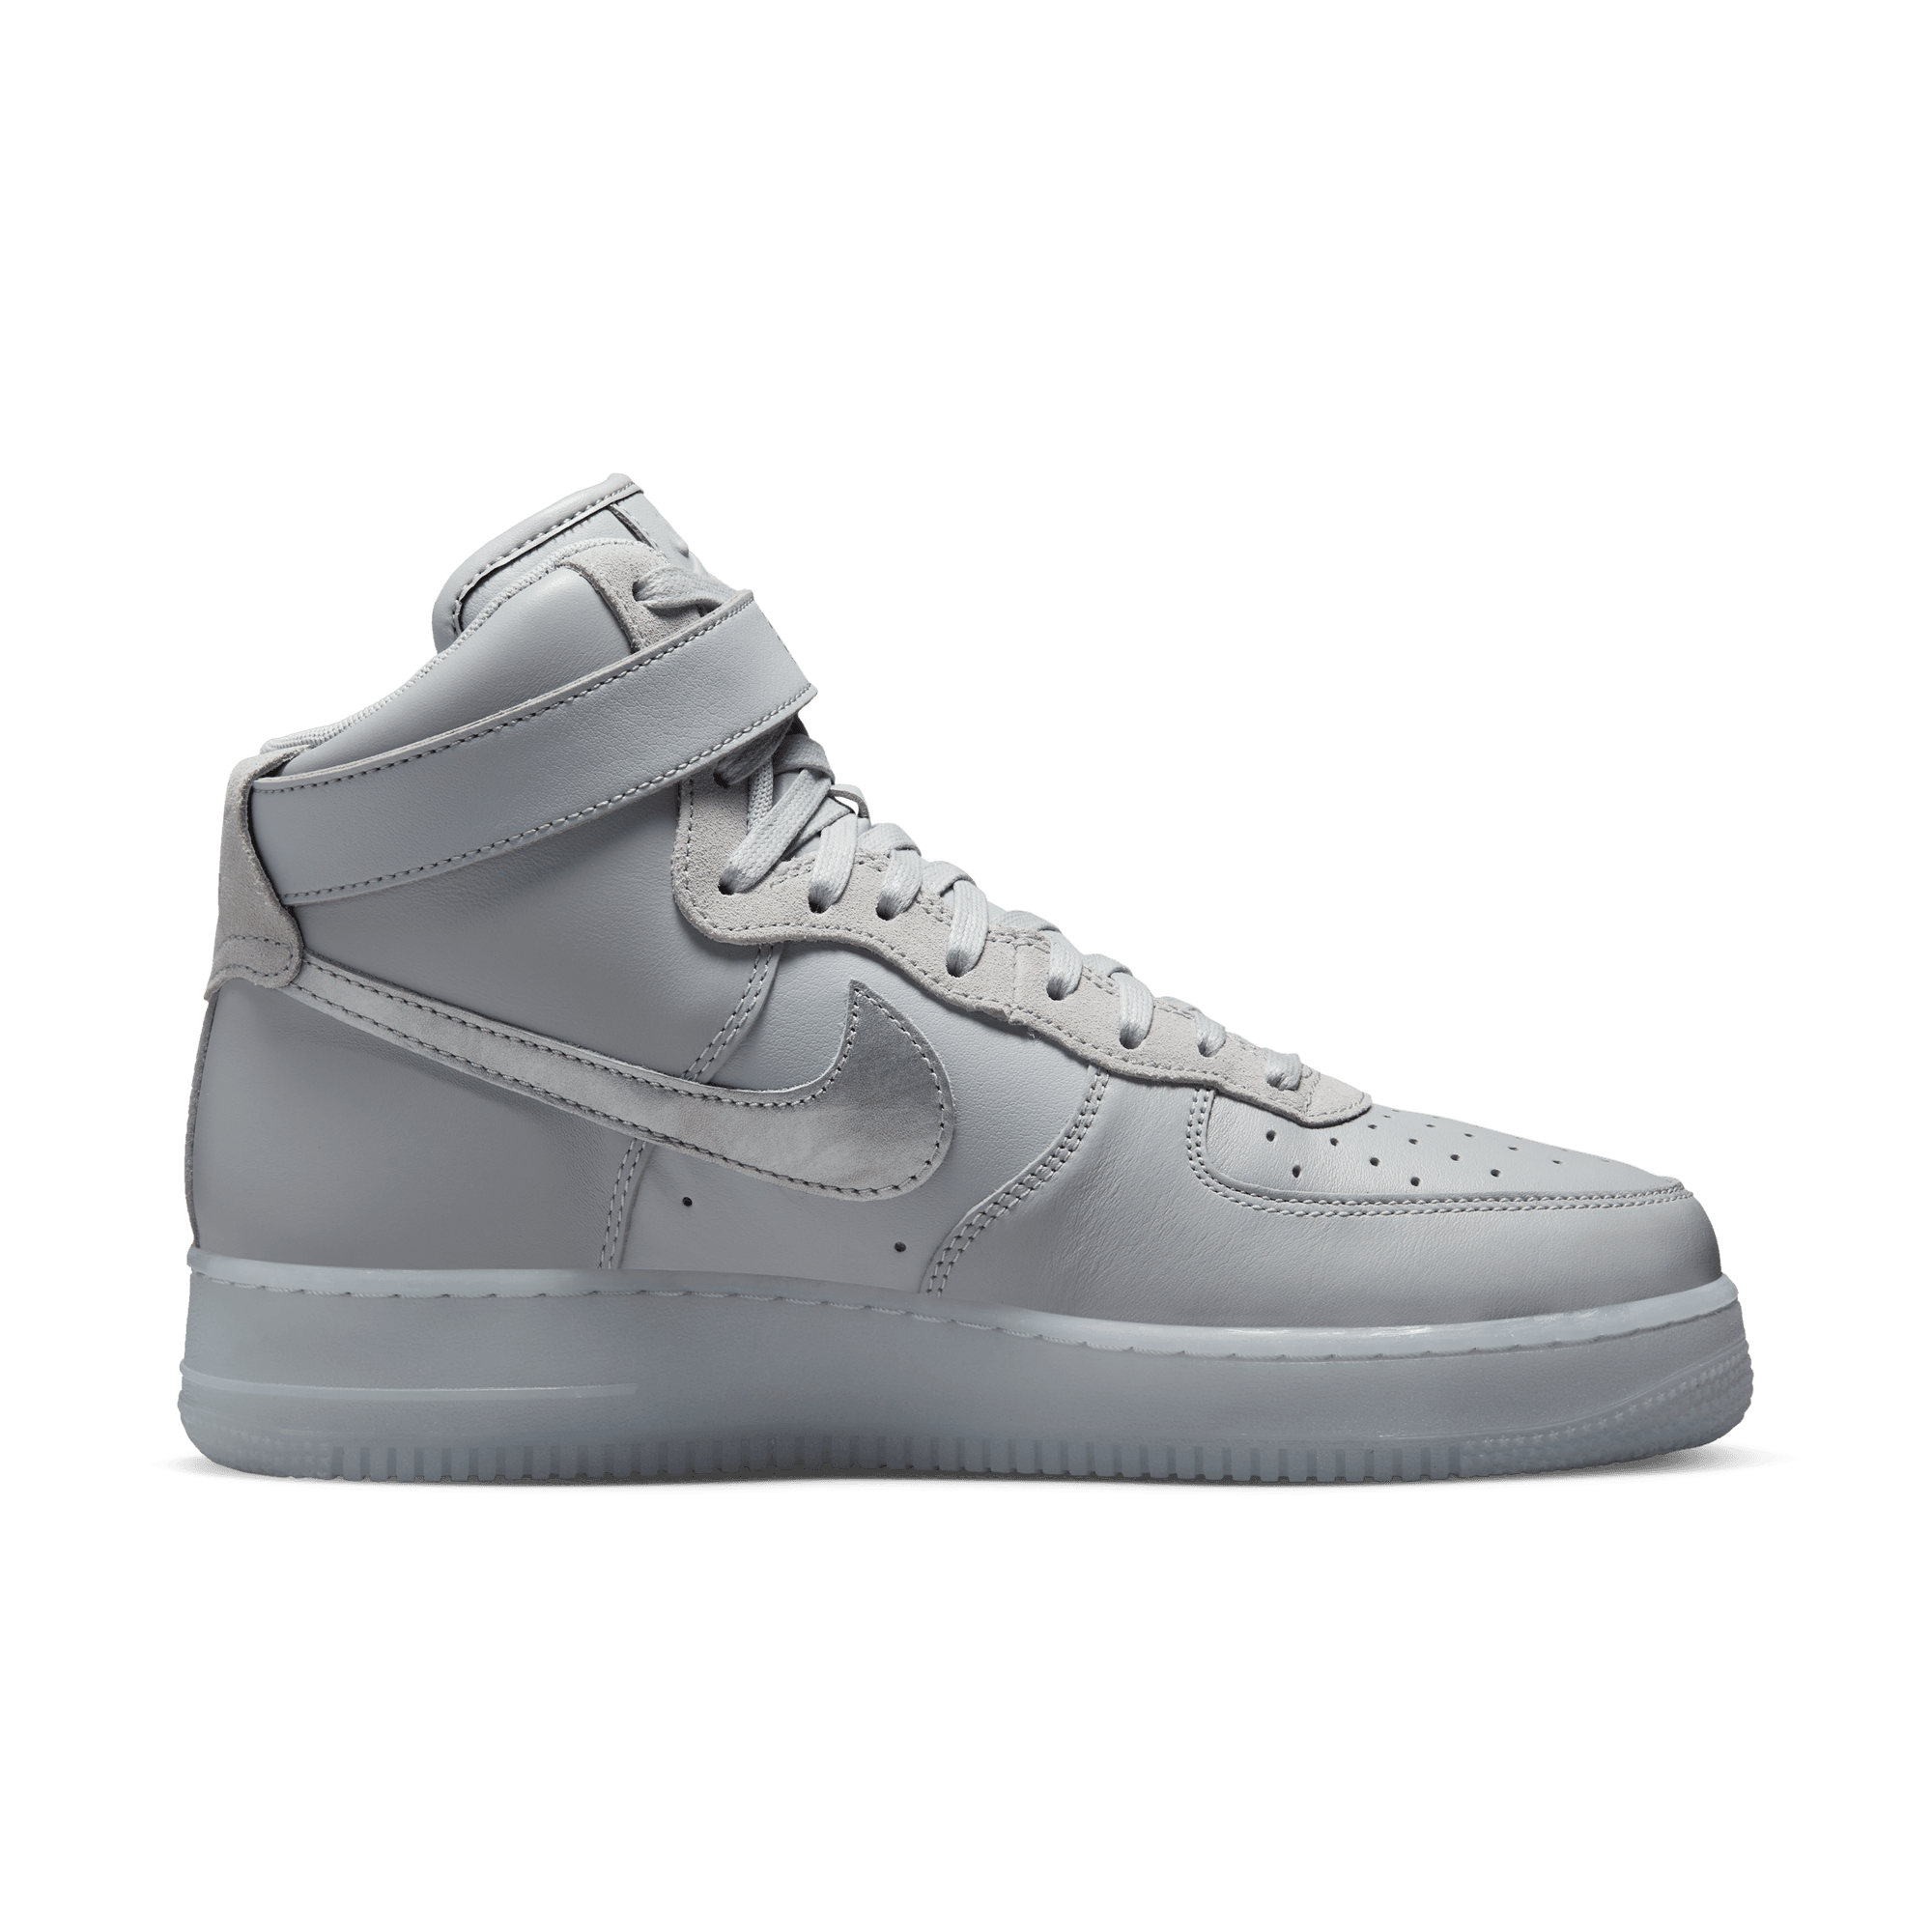 Nike Air Force 1 High '07 White/Dark Gray 2020, Drops